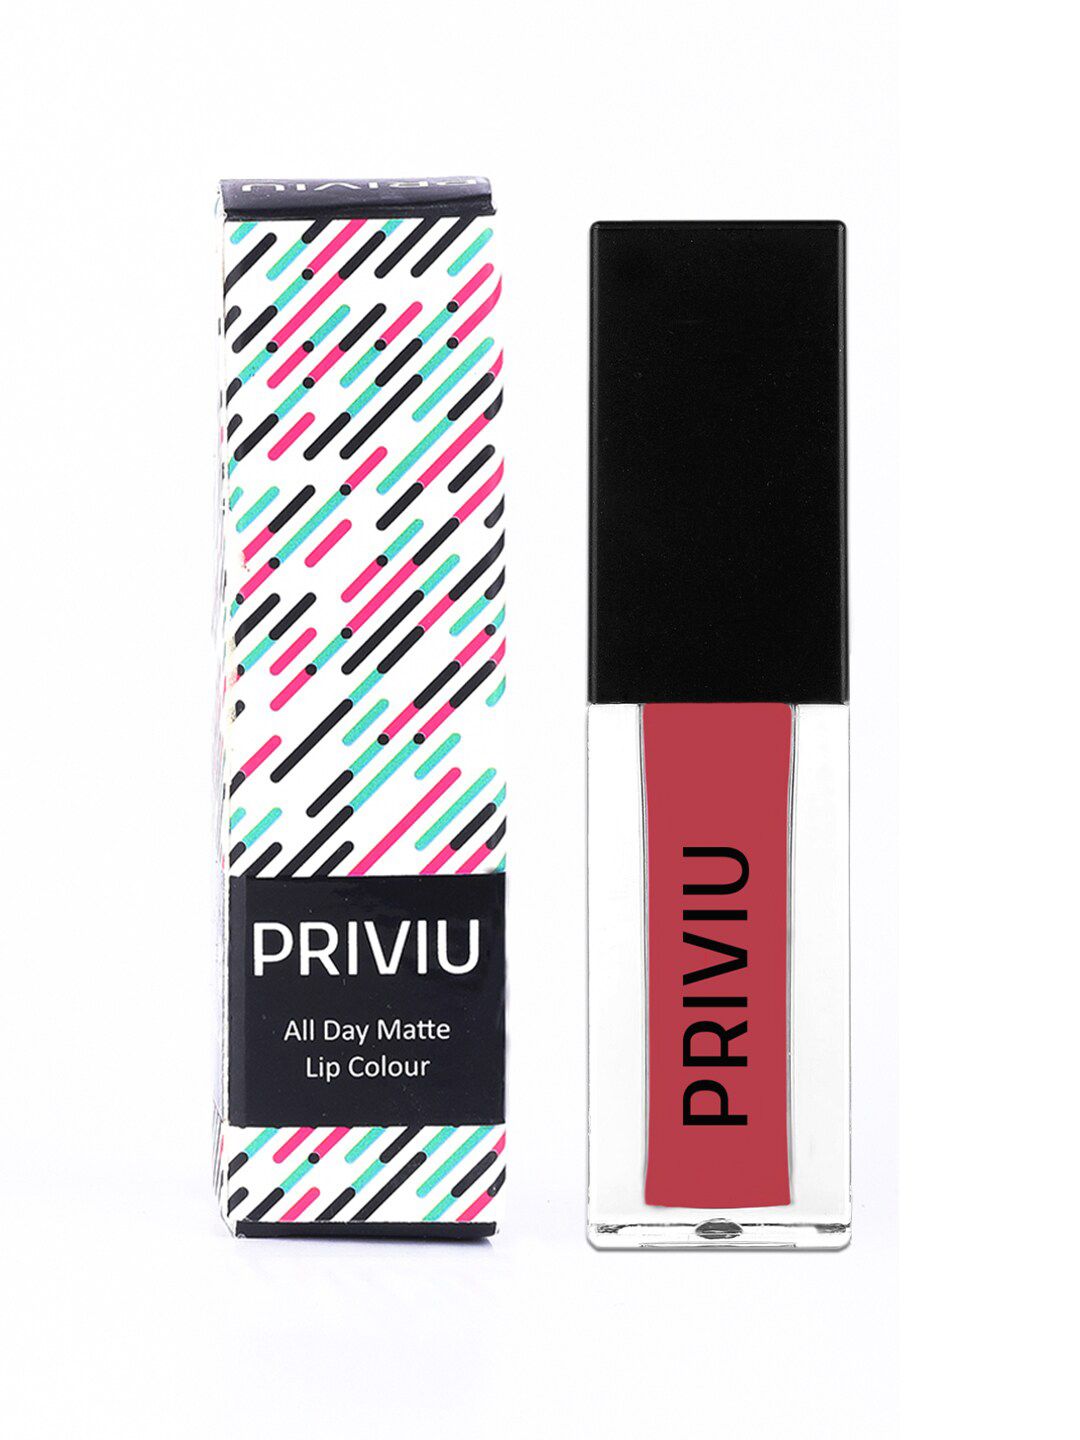 PRIVIU All Day Matte Liquid Lipstick Price in India